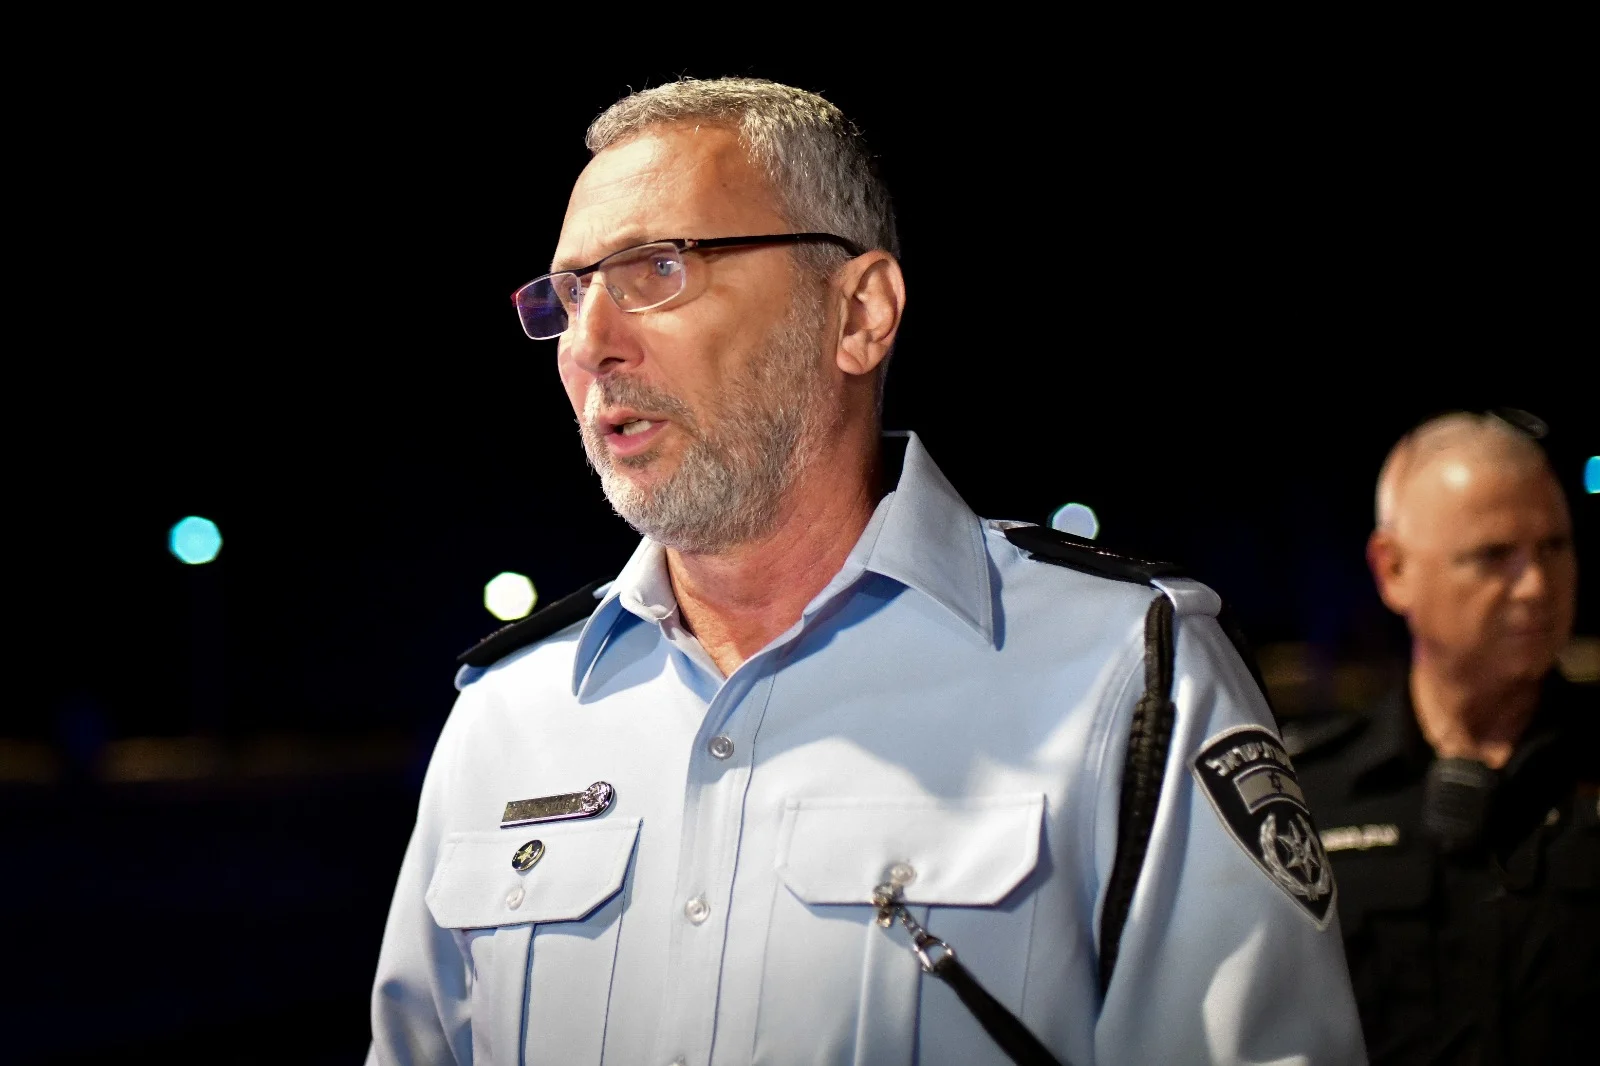 מפקד מחוז ת''א עמי אשד בזירת הפיגוע בטיילת תל אביב, קויפמן